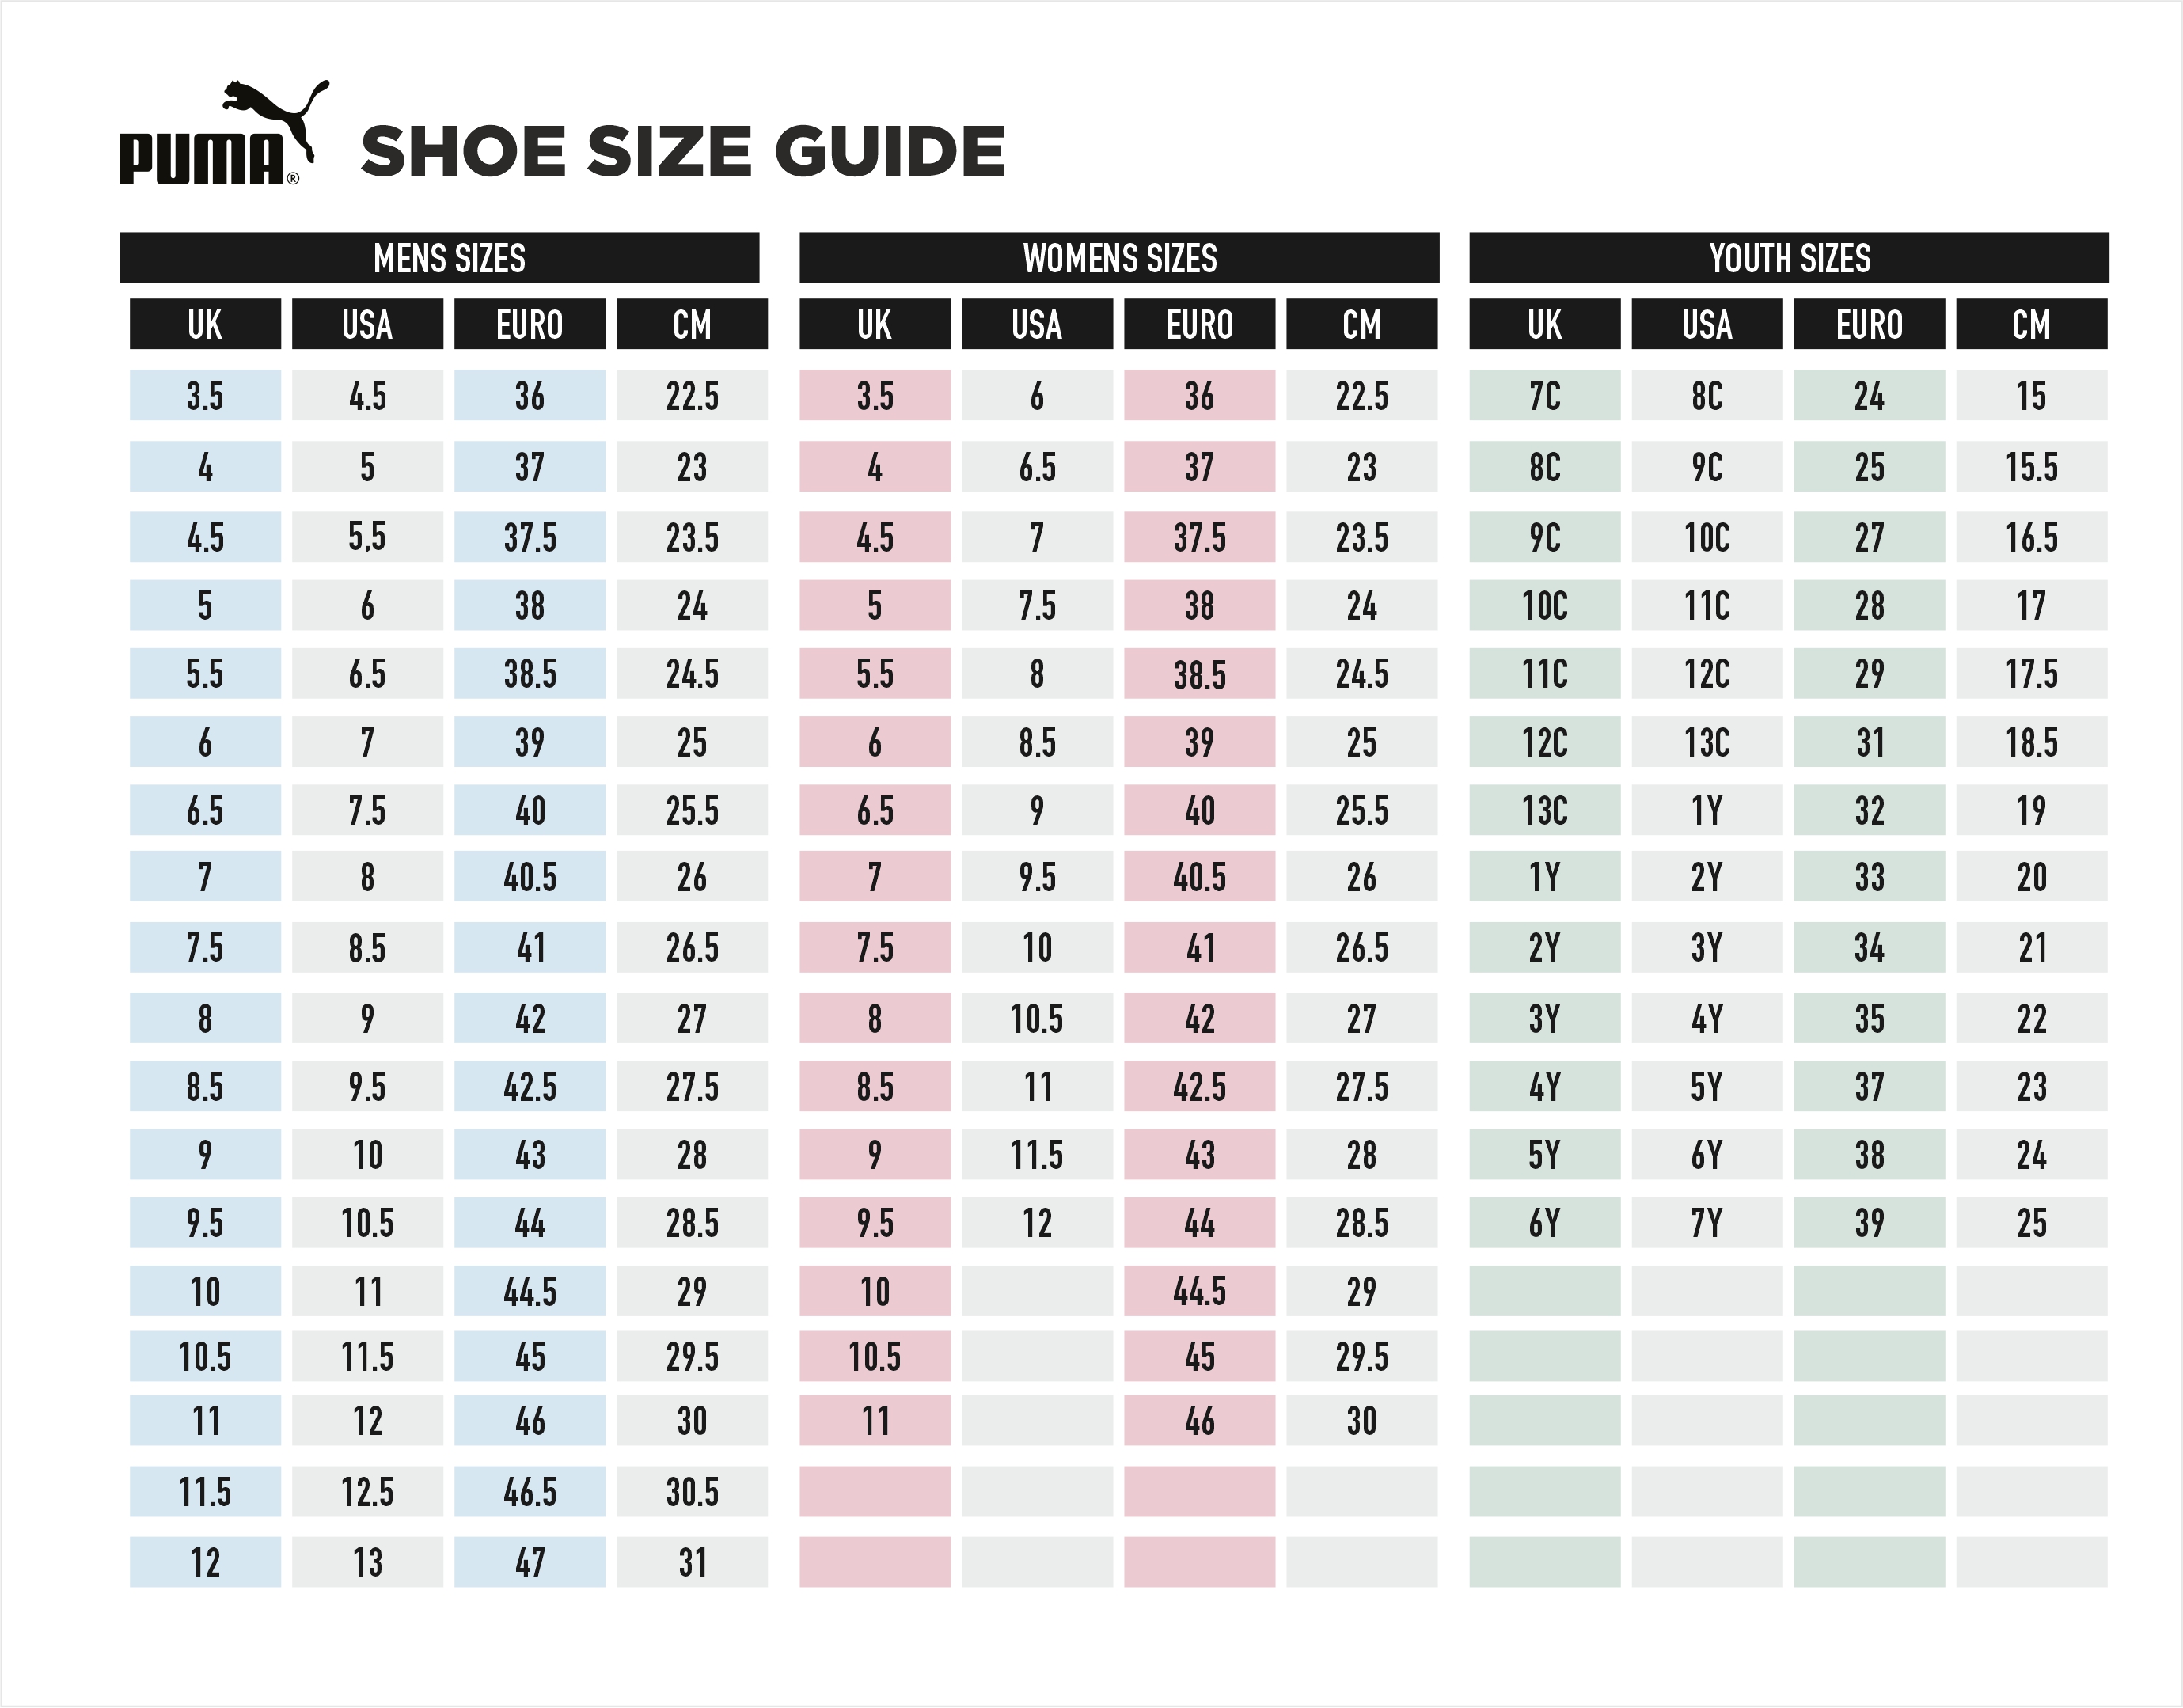 puma shoe sizes - 59% OFF - tajpalace.net